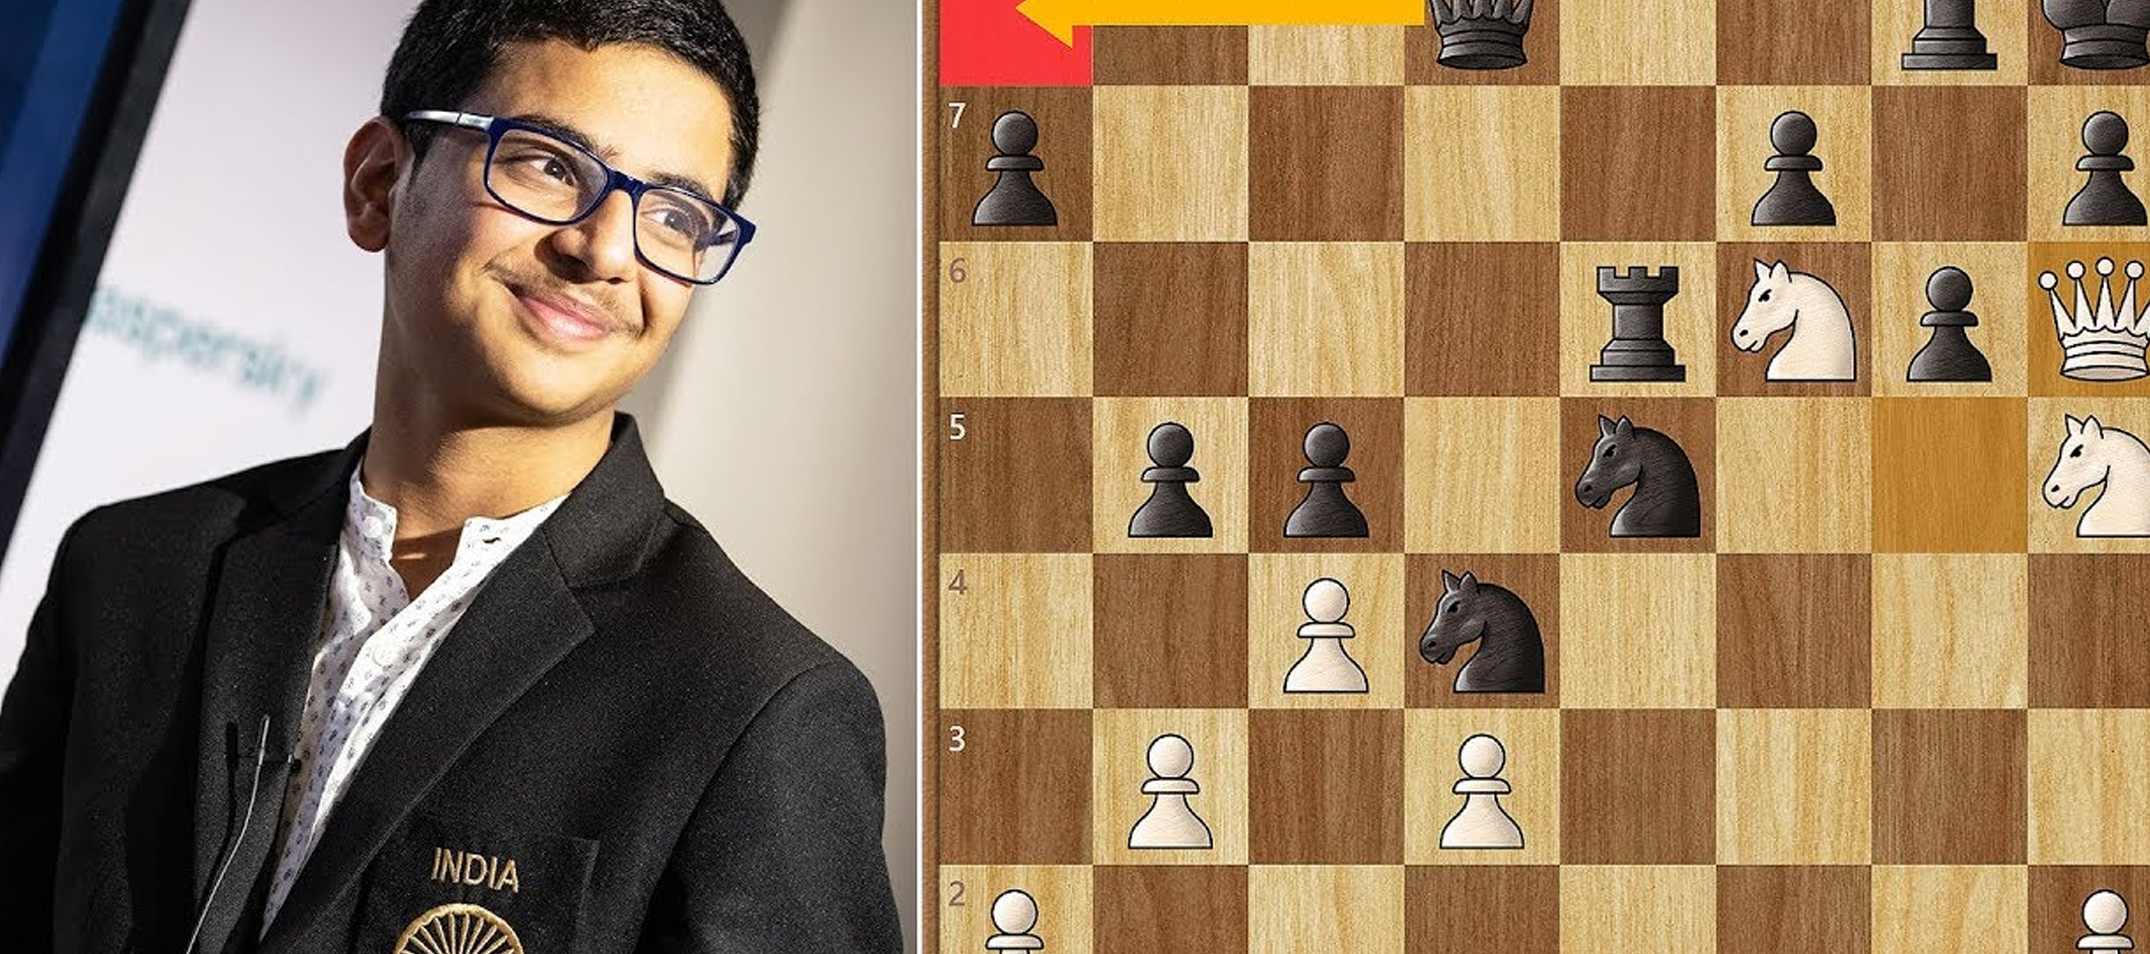 Raunak Sadhwani becomes India’s 65th Grandmaster